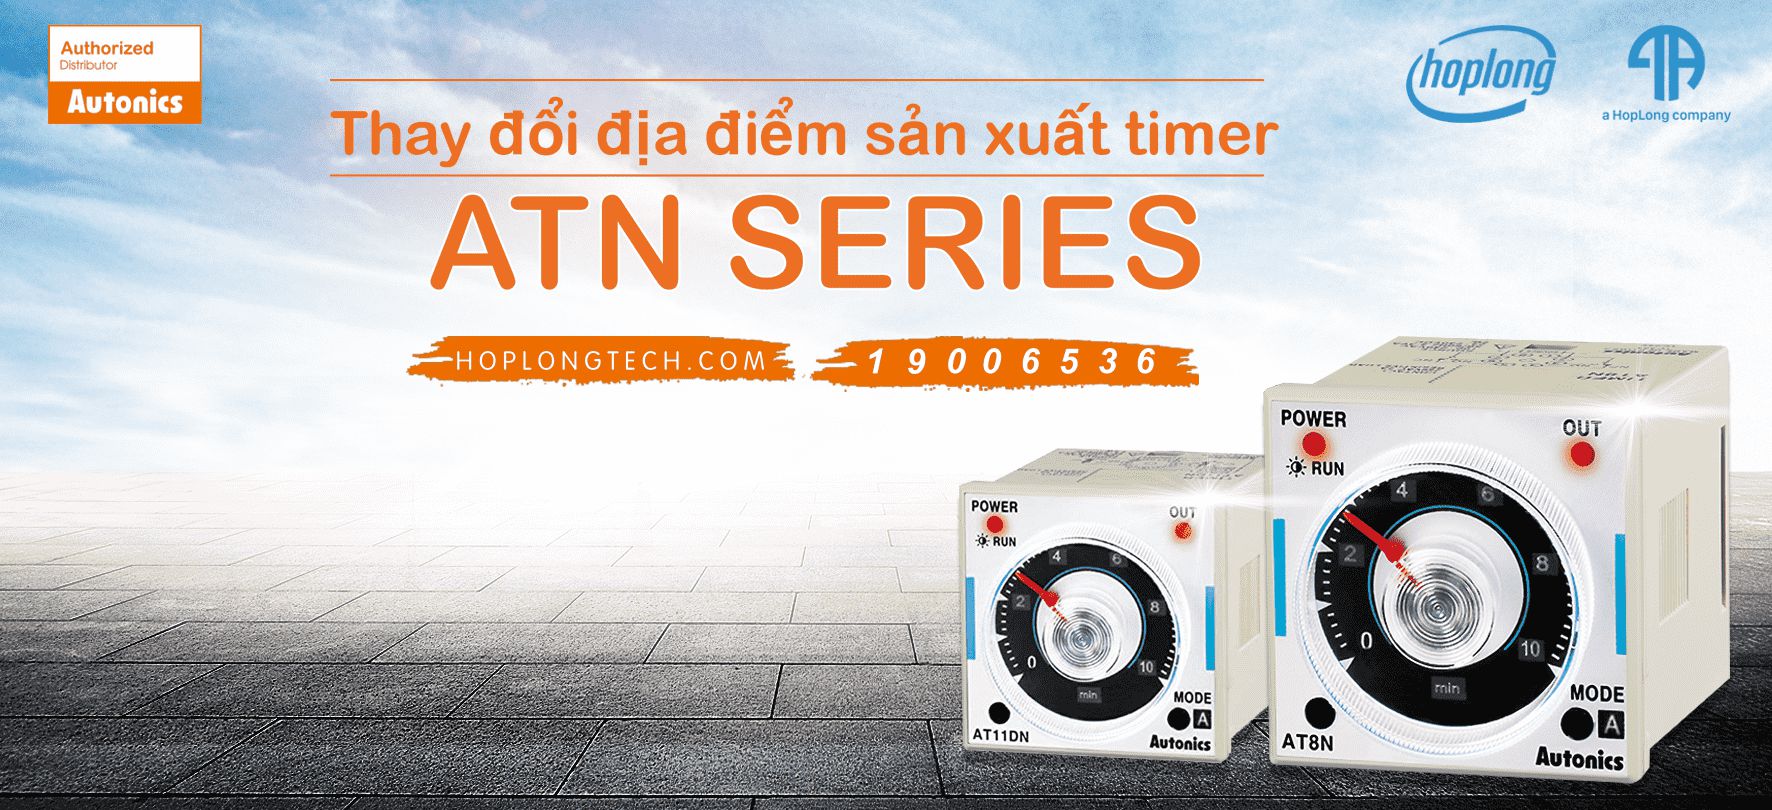 [Autonics - Thông báo] Thay đổi địa điểm sản xuất timer ATN Series